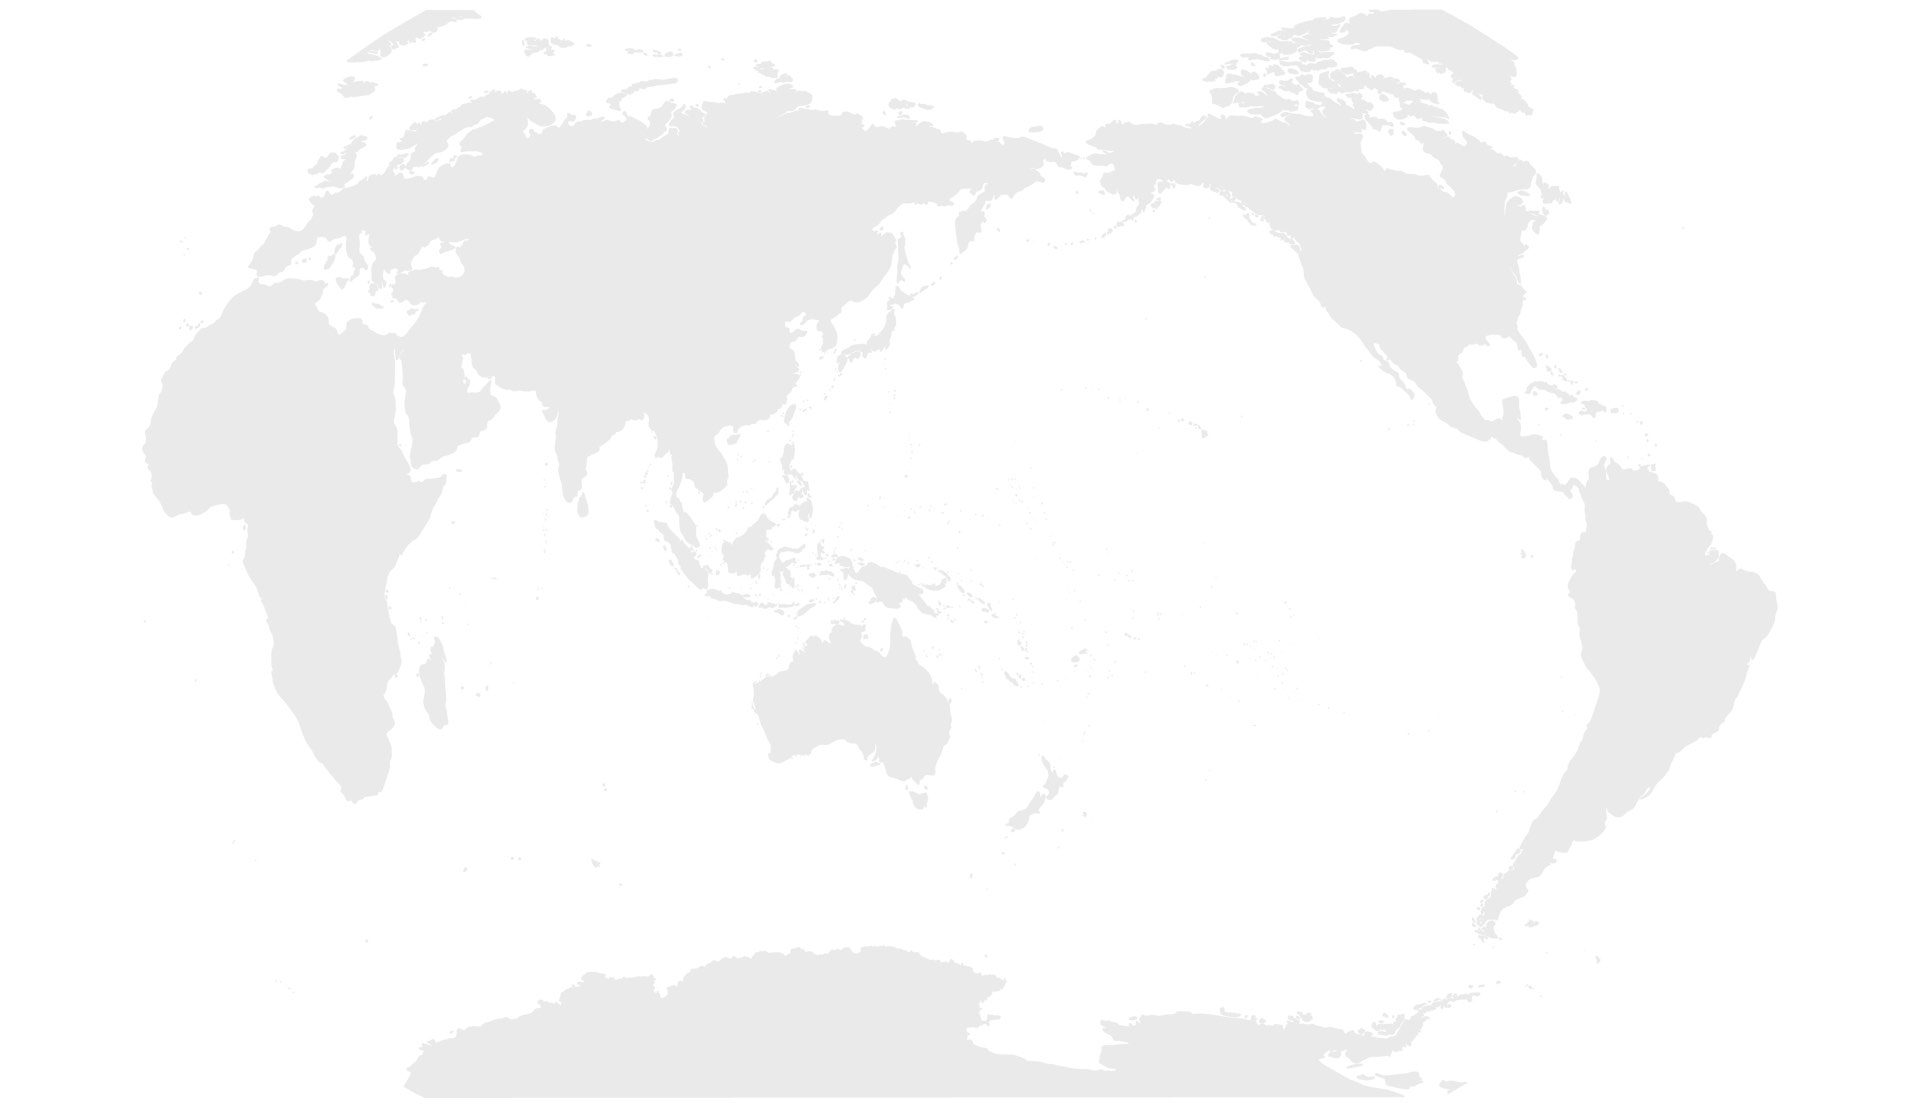 zemljevid.jpg